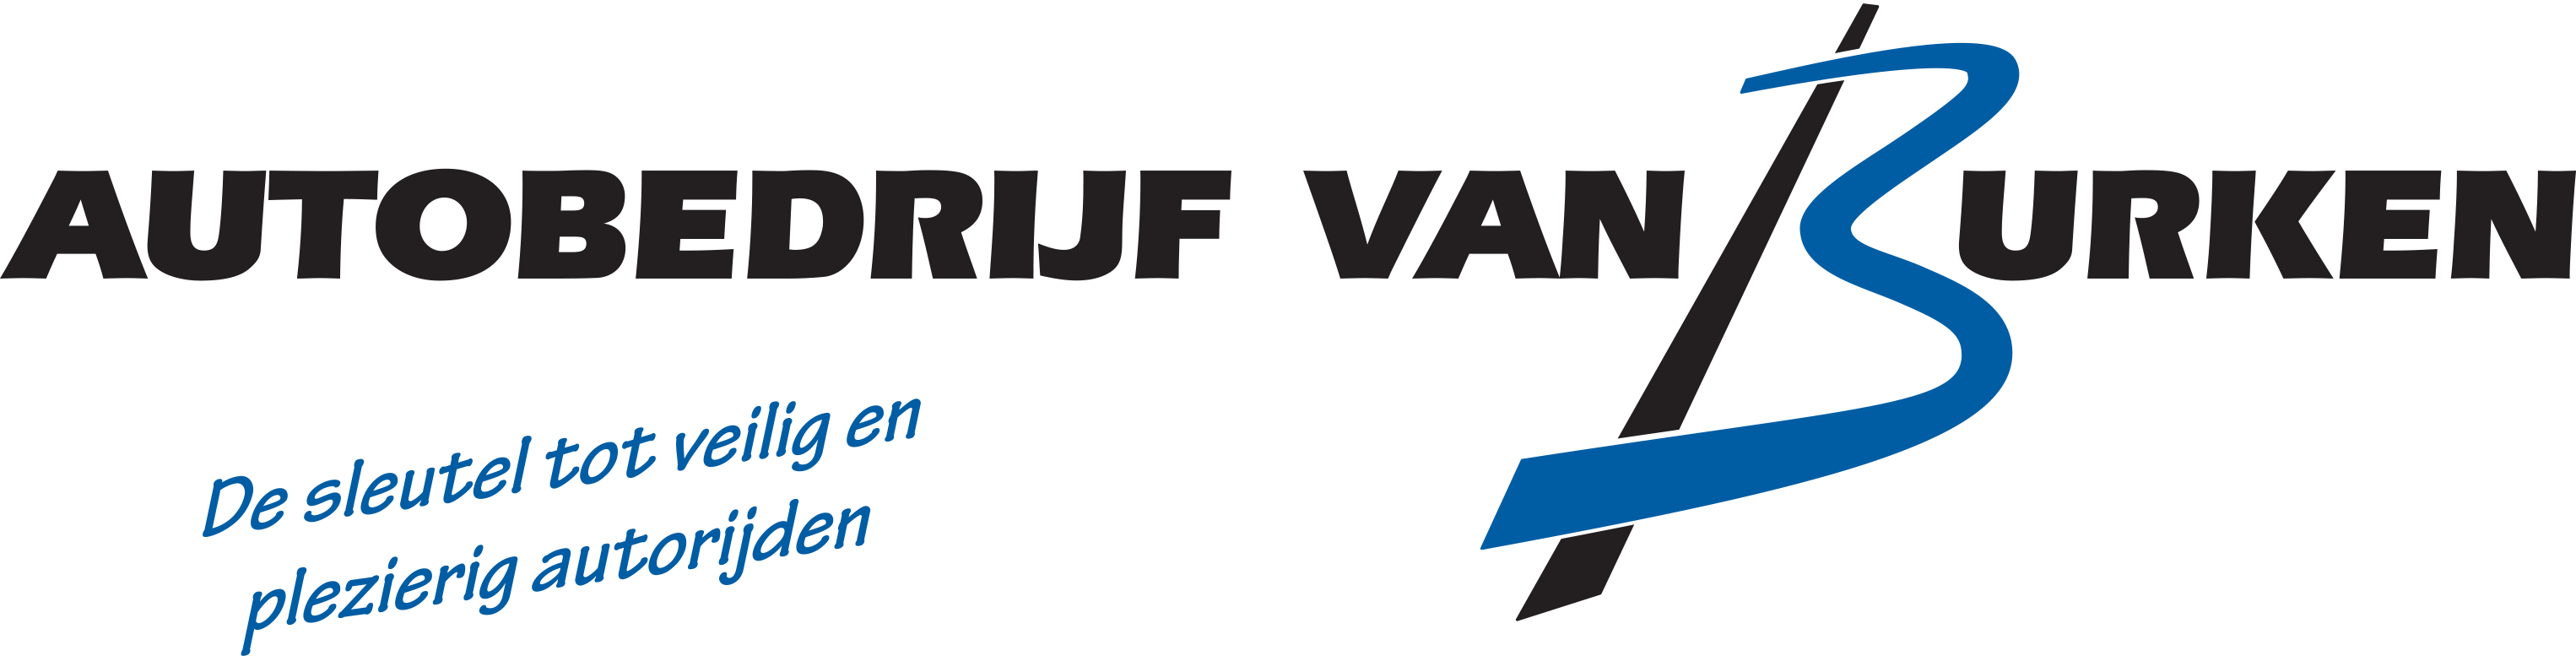 Autobedrijf van Burken logo